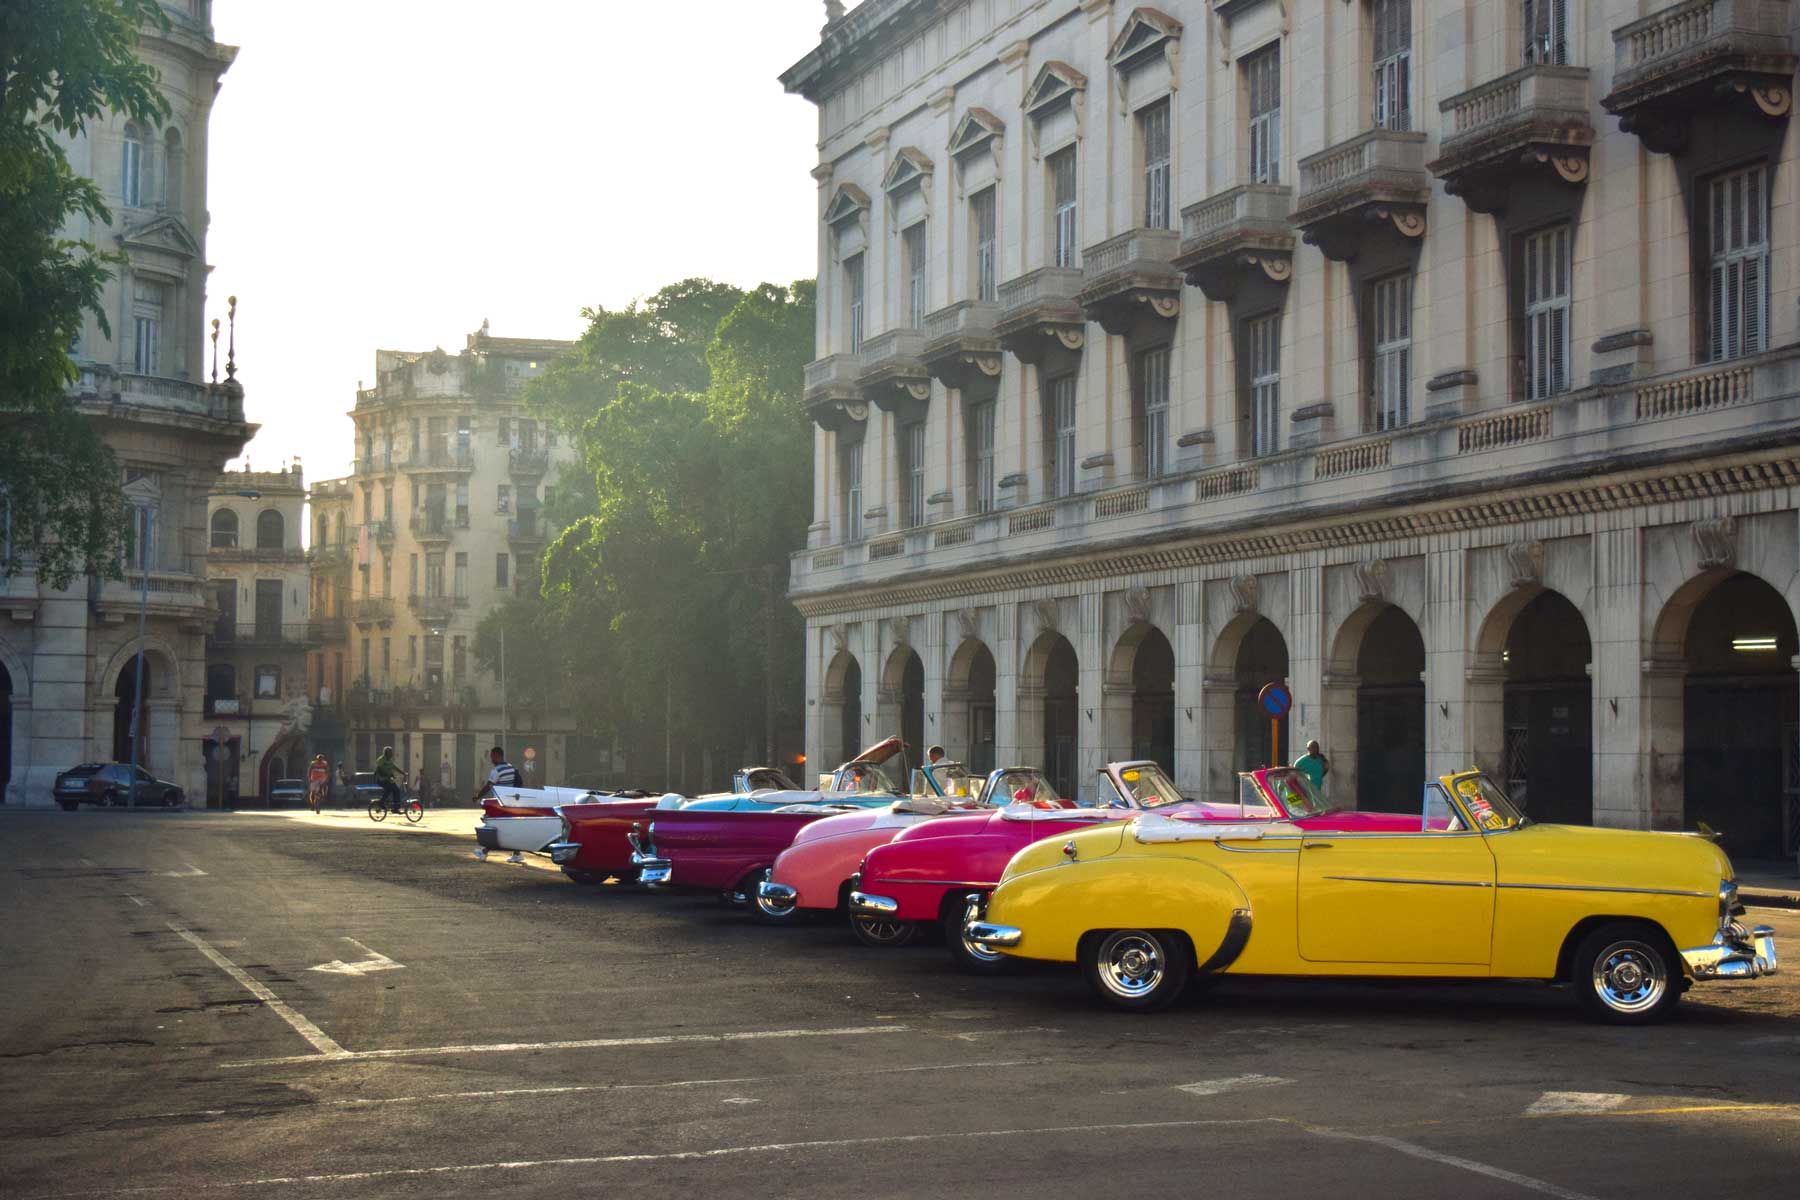 Havanna, Kuba, UNESCO-Weltkulturerbe mit Oldtimern, die bei Sonnenaufgang im historischen Stadtzentrum geparkt sind.